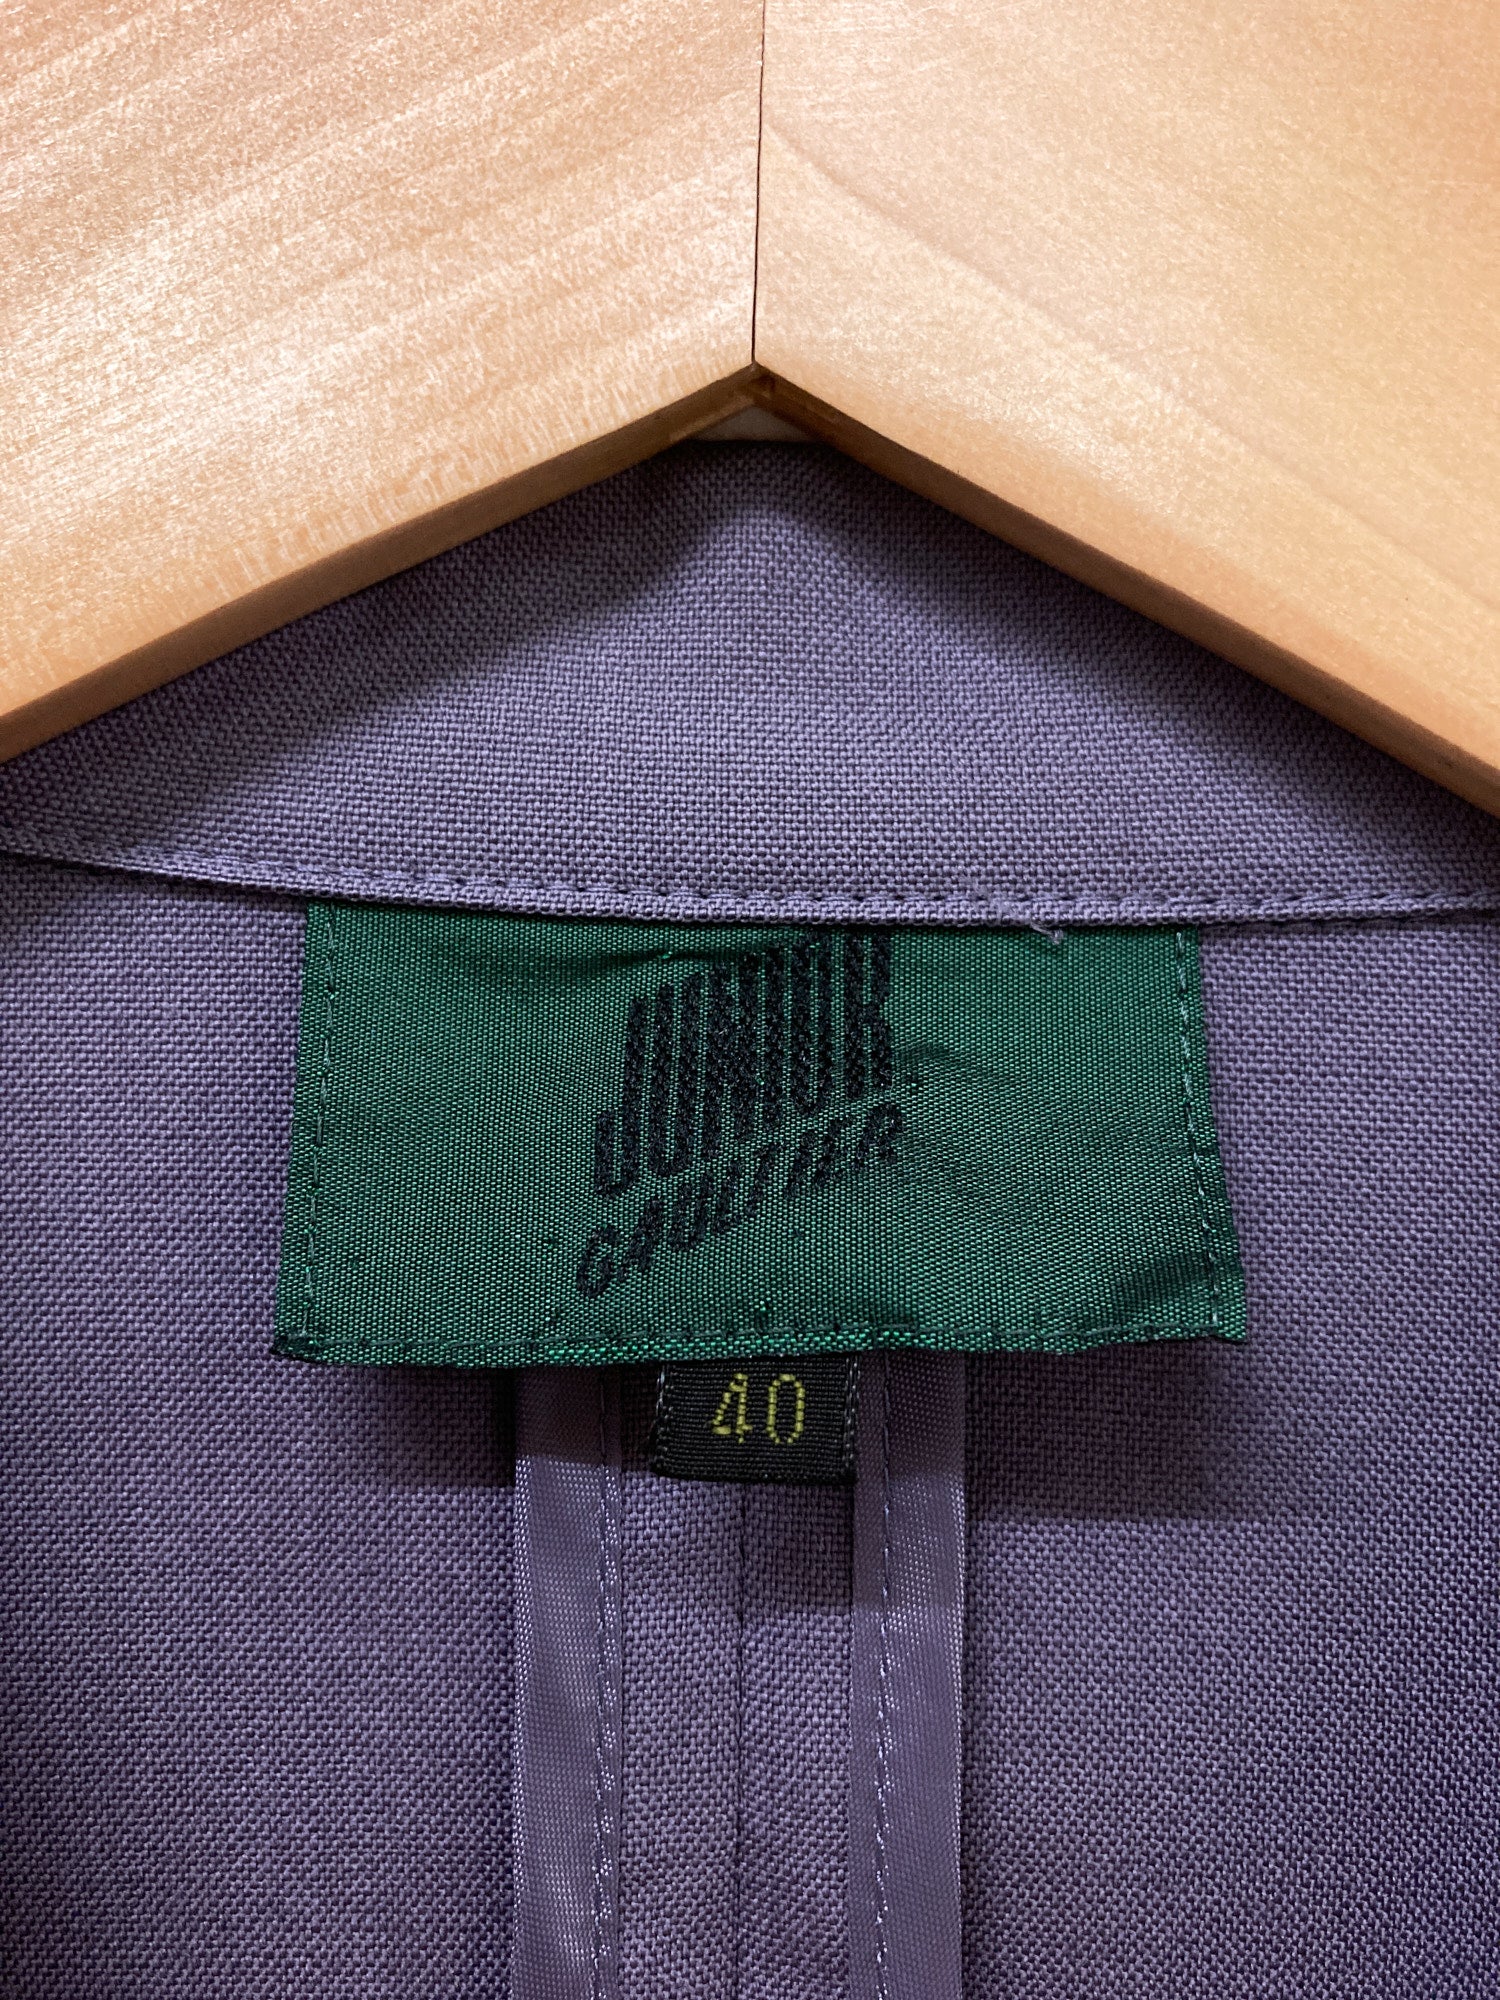 Jean Paul Gaultier Junior 1980s - 1990s lavender wool three button blazer - 40 S